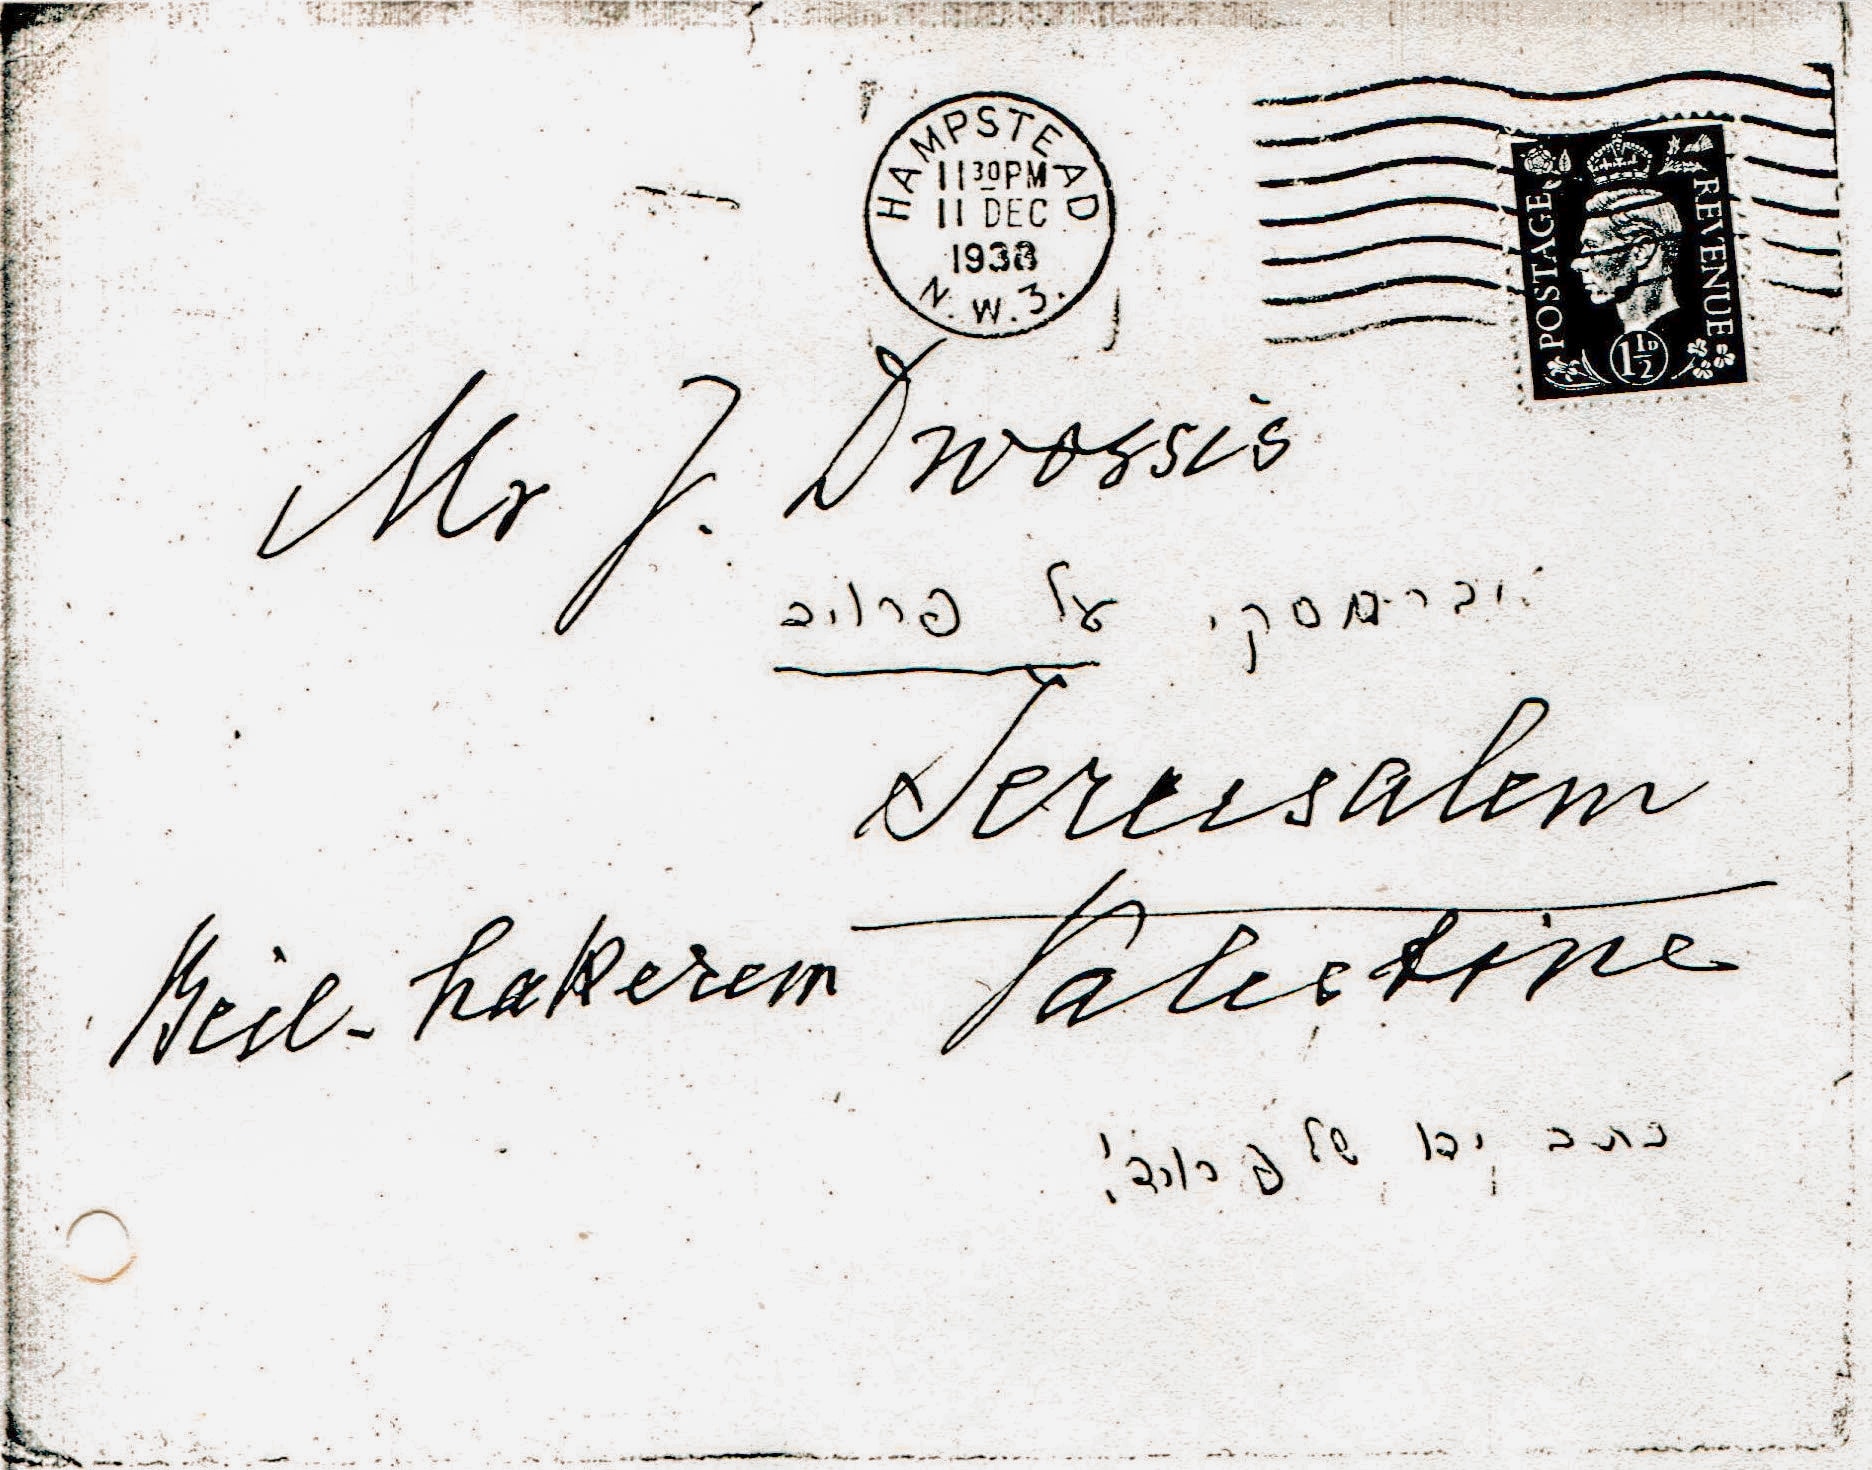 המעטפה בכתב ידו של זיגמונד פרויד שנשלחה ליהודה דביר בירושלים בדצמבר 1938 (צילום: באדיבות מוזאון פרויד בלונדון)